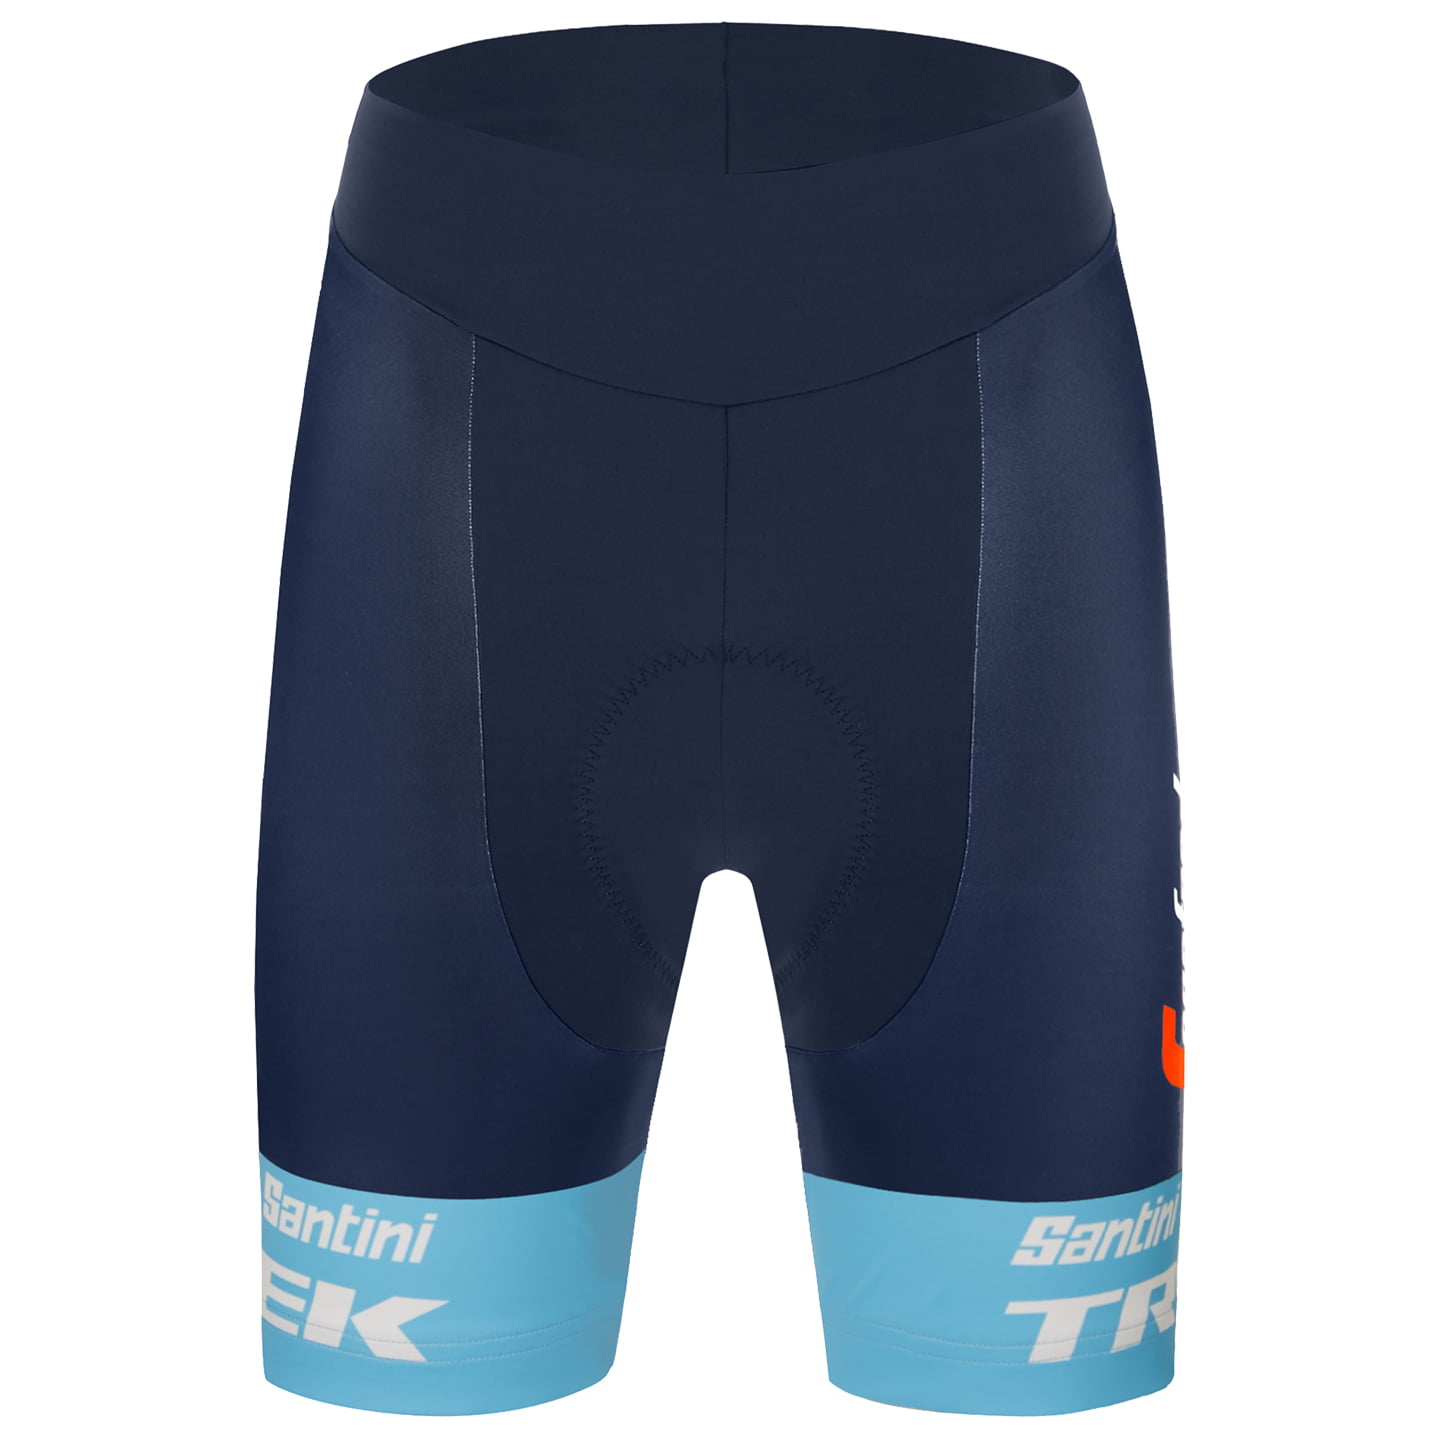 TREK SEGAFREDO 2022 Women’s Cycling Shorts Women’s Cycling Shorts, size XL